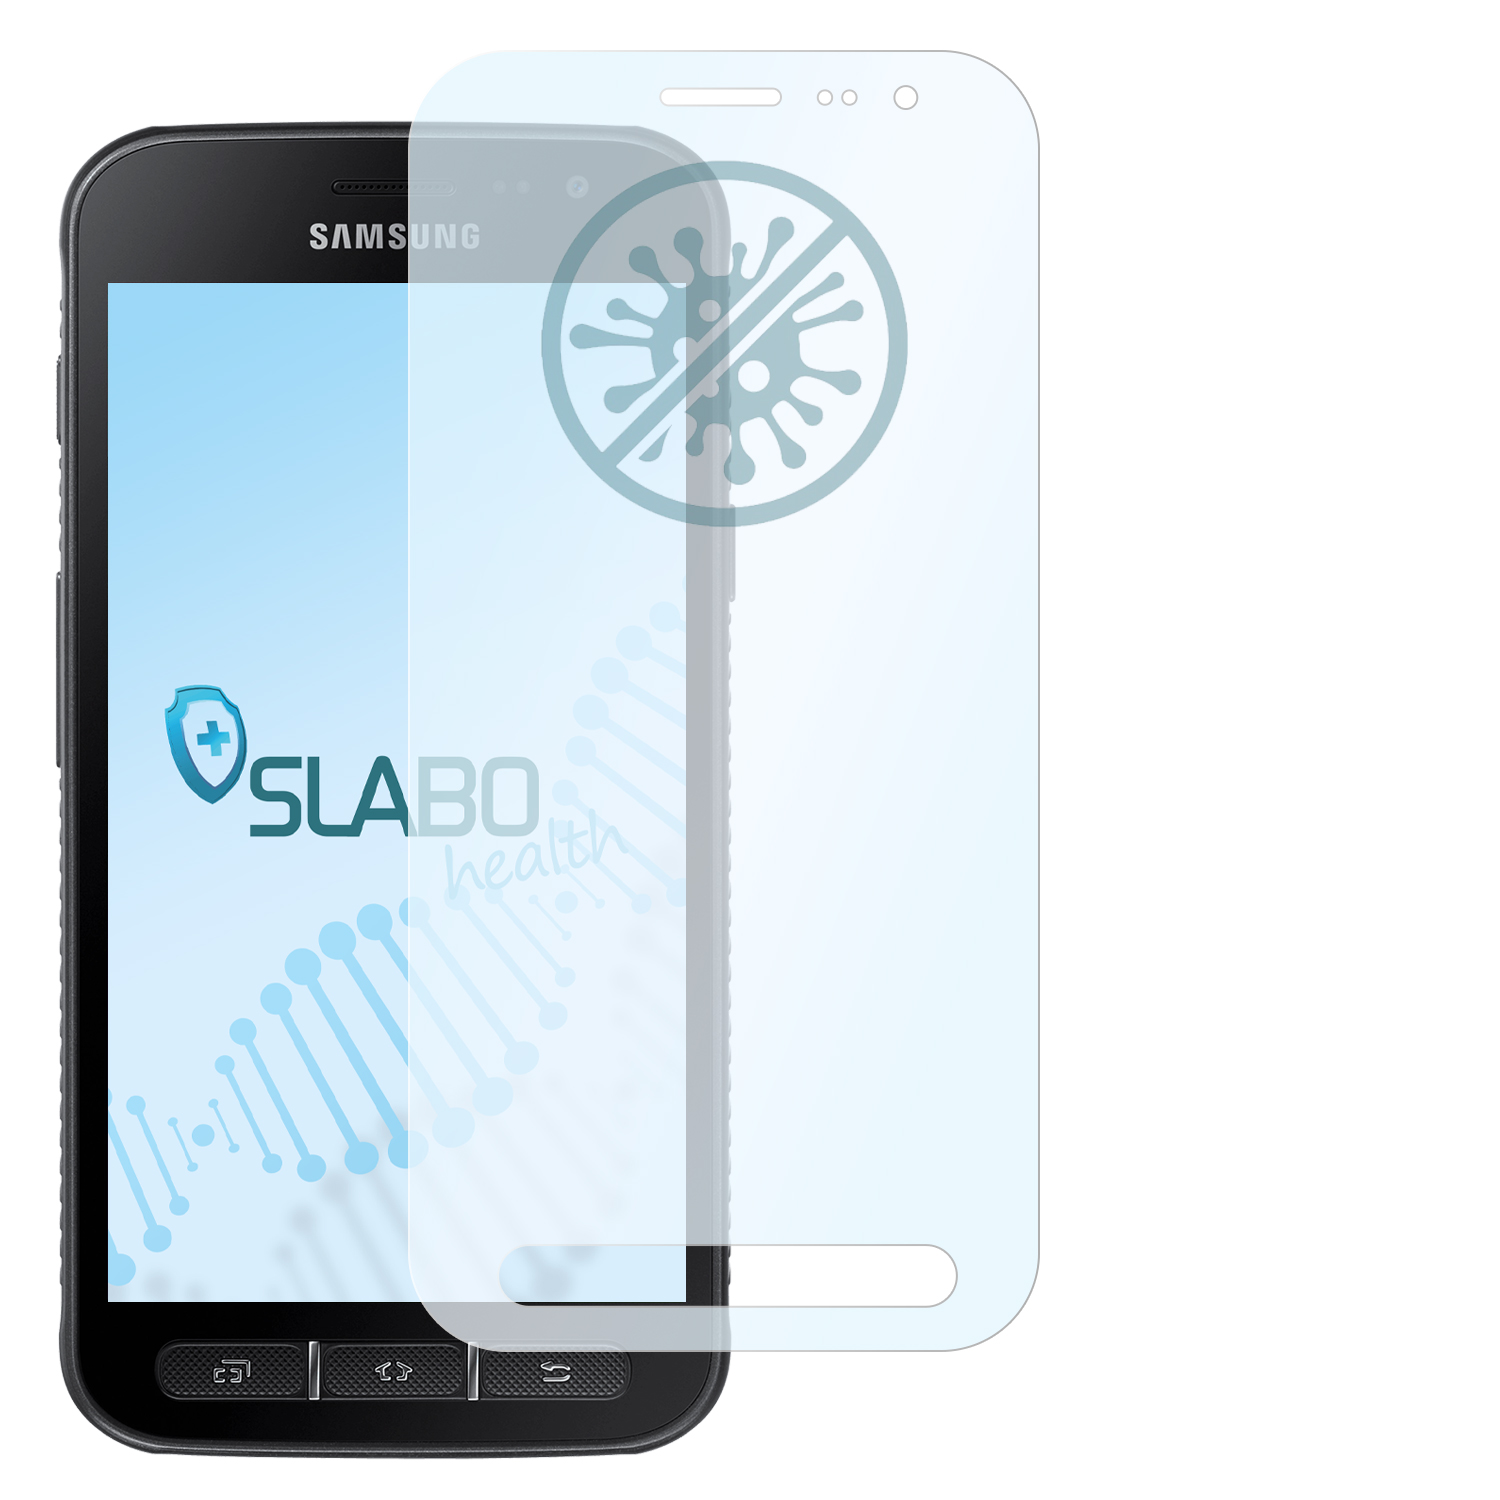 SM-G390F antibakterielle 4 Galaxy Samsung Displayschutz(für flexible 4s) | Hybridglasfolie SLABO XCover XCover Samsung Galaxy